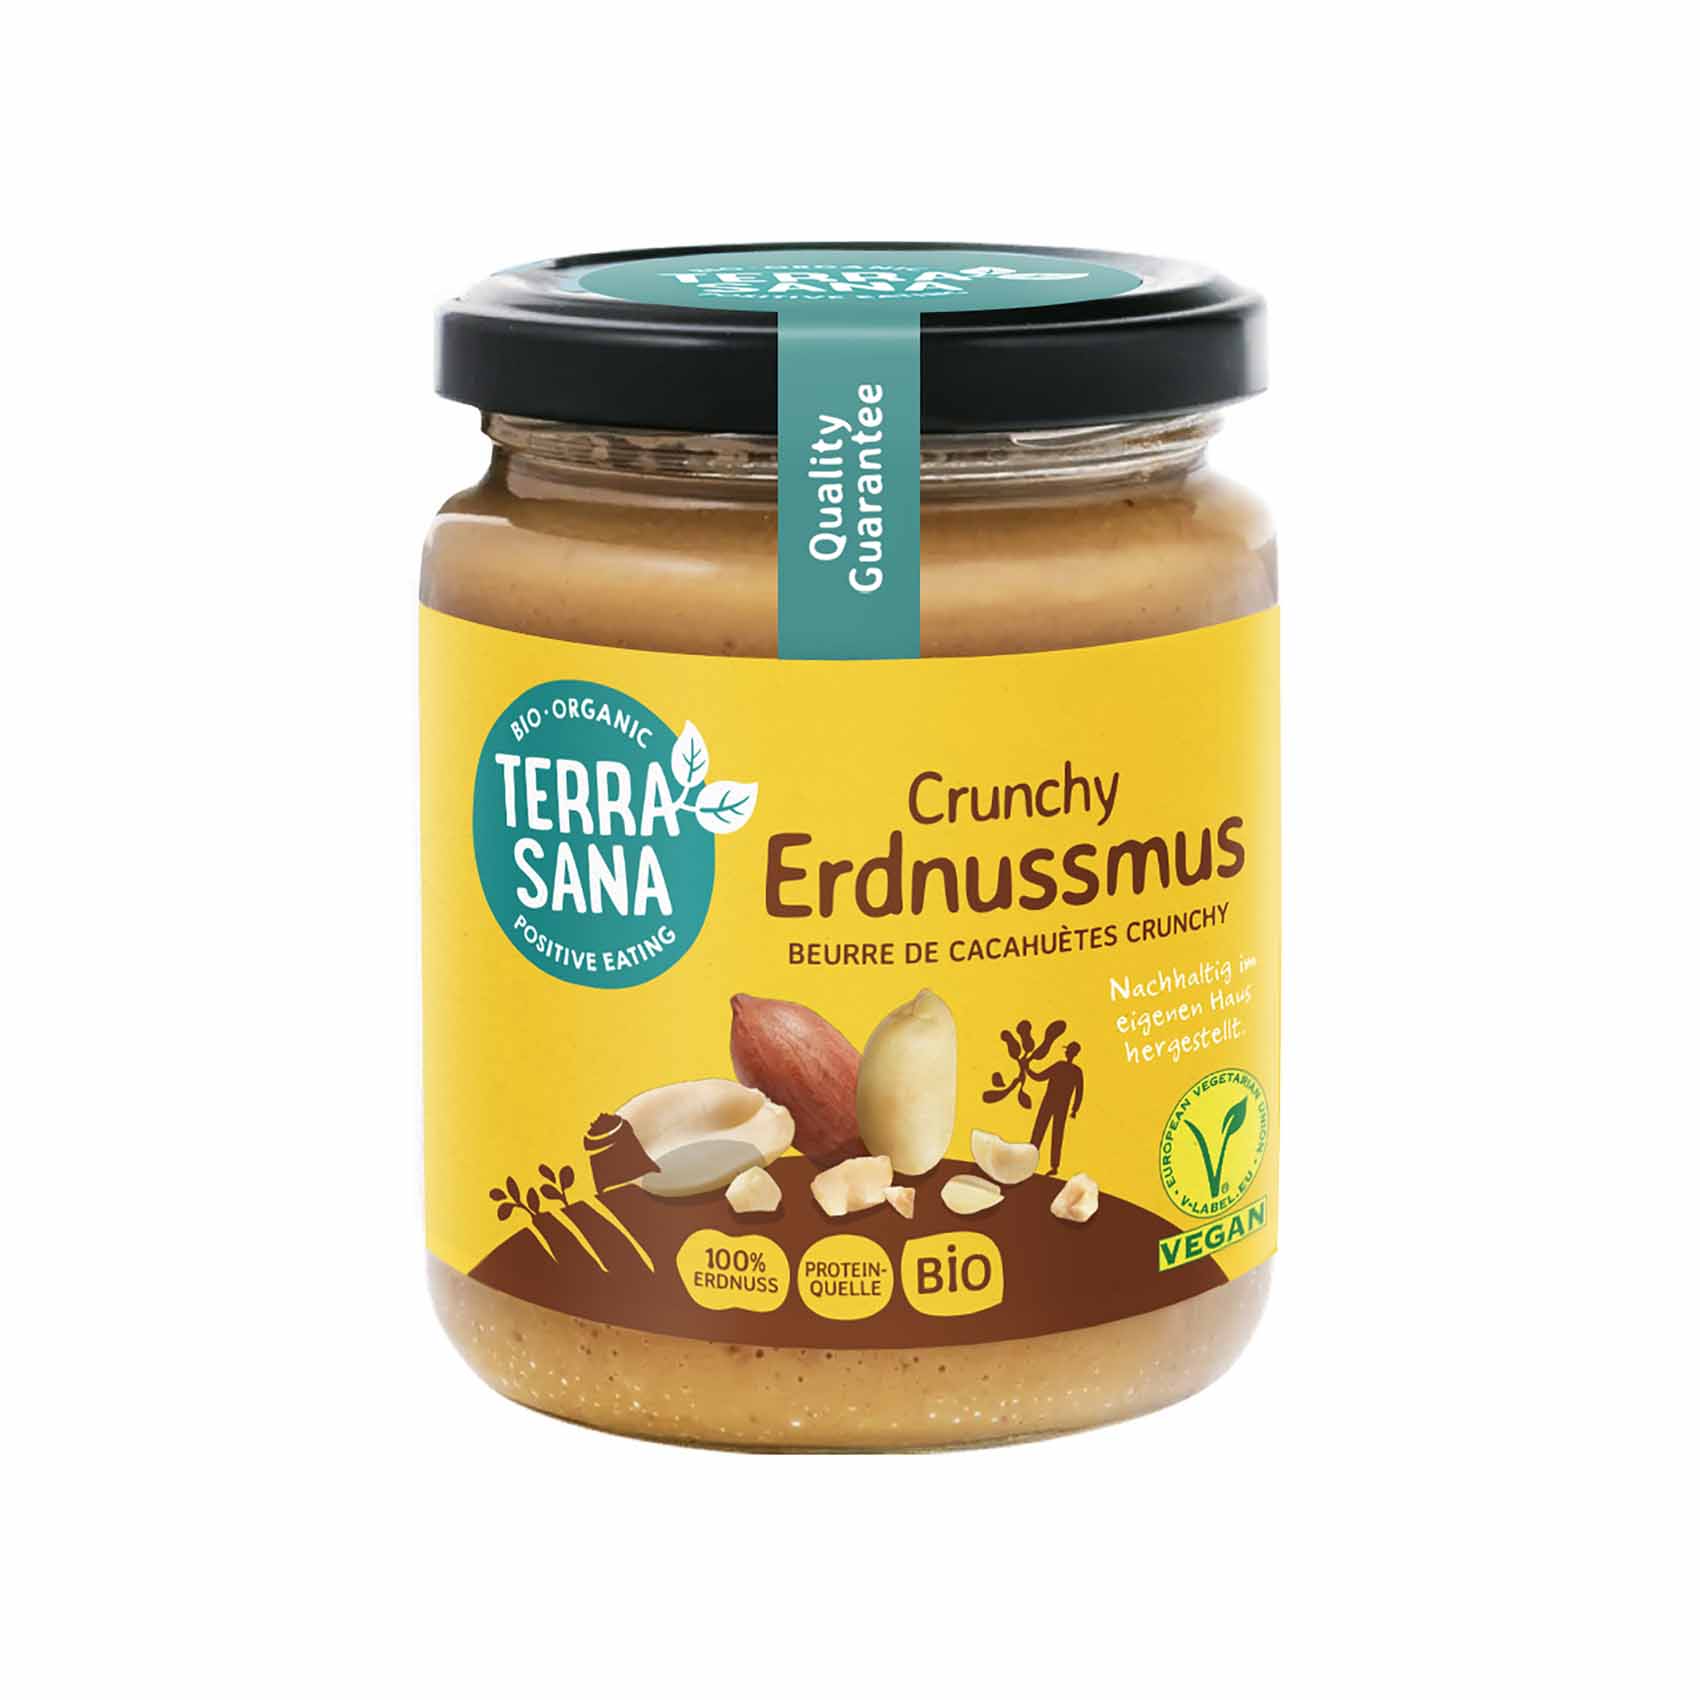 Terrasana Erdnussmus Crunchy 250g